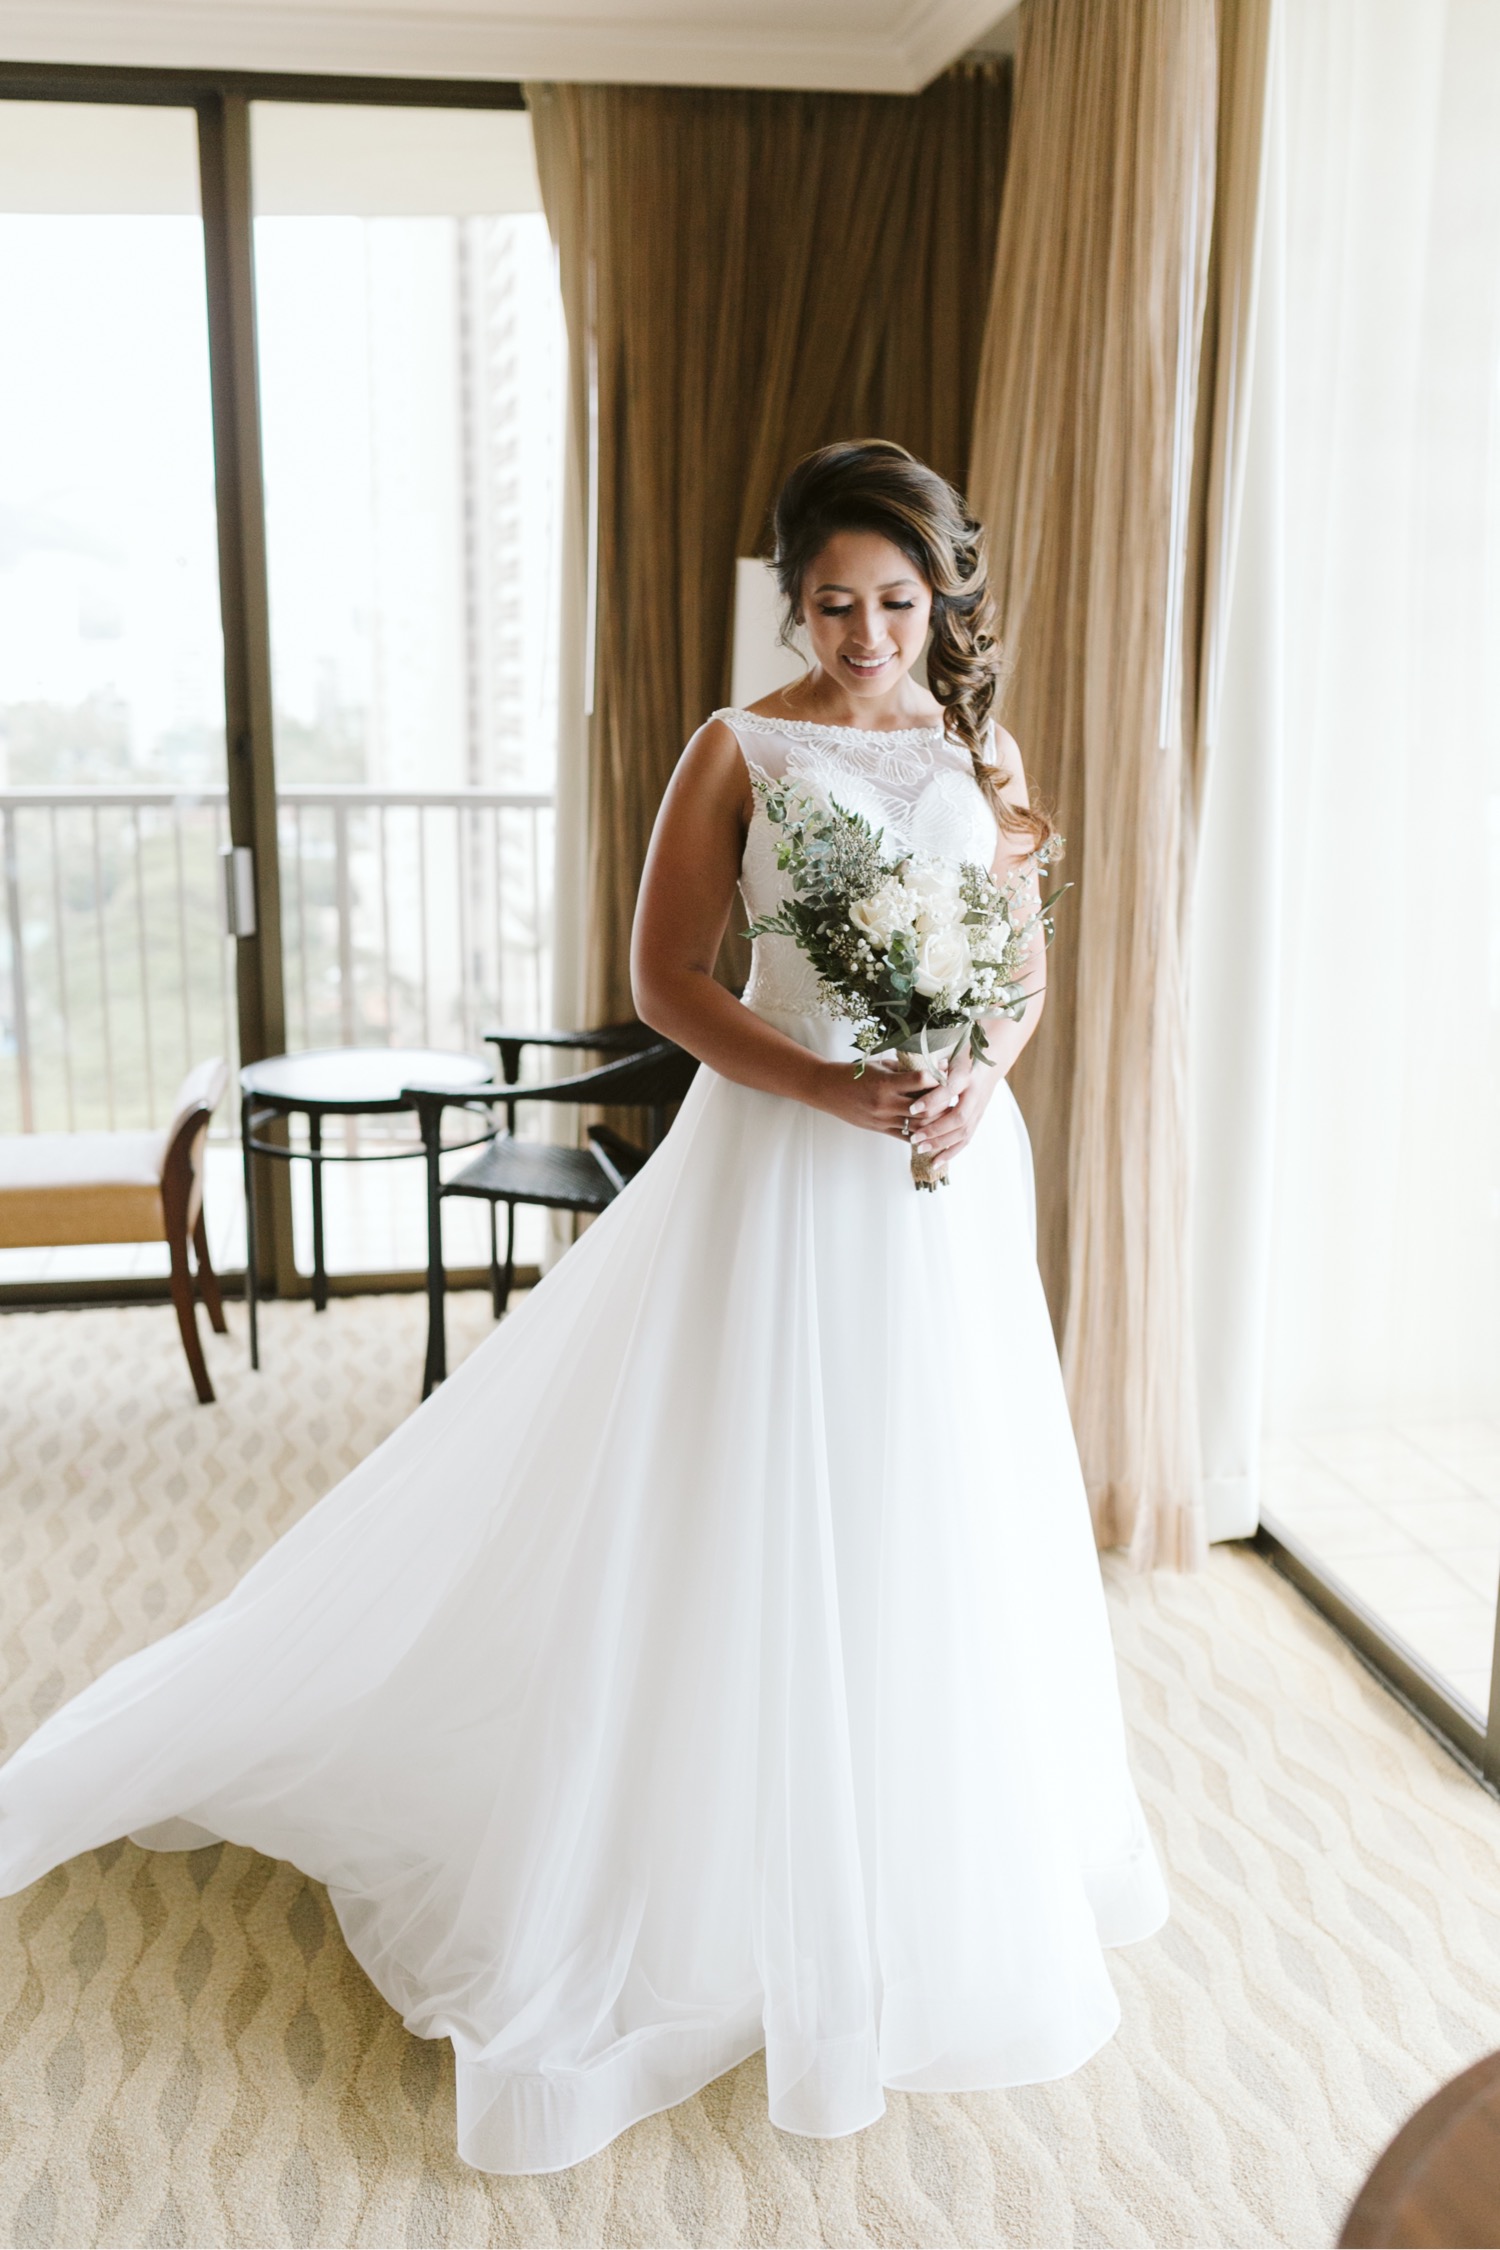 014_Brayden-Julianne-Wedding-29_Hilton_Village_portrait_Hawaiian_Bride_Bouquet_getting_flowers_ready.jpg